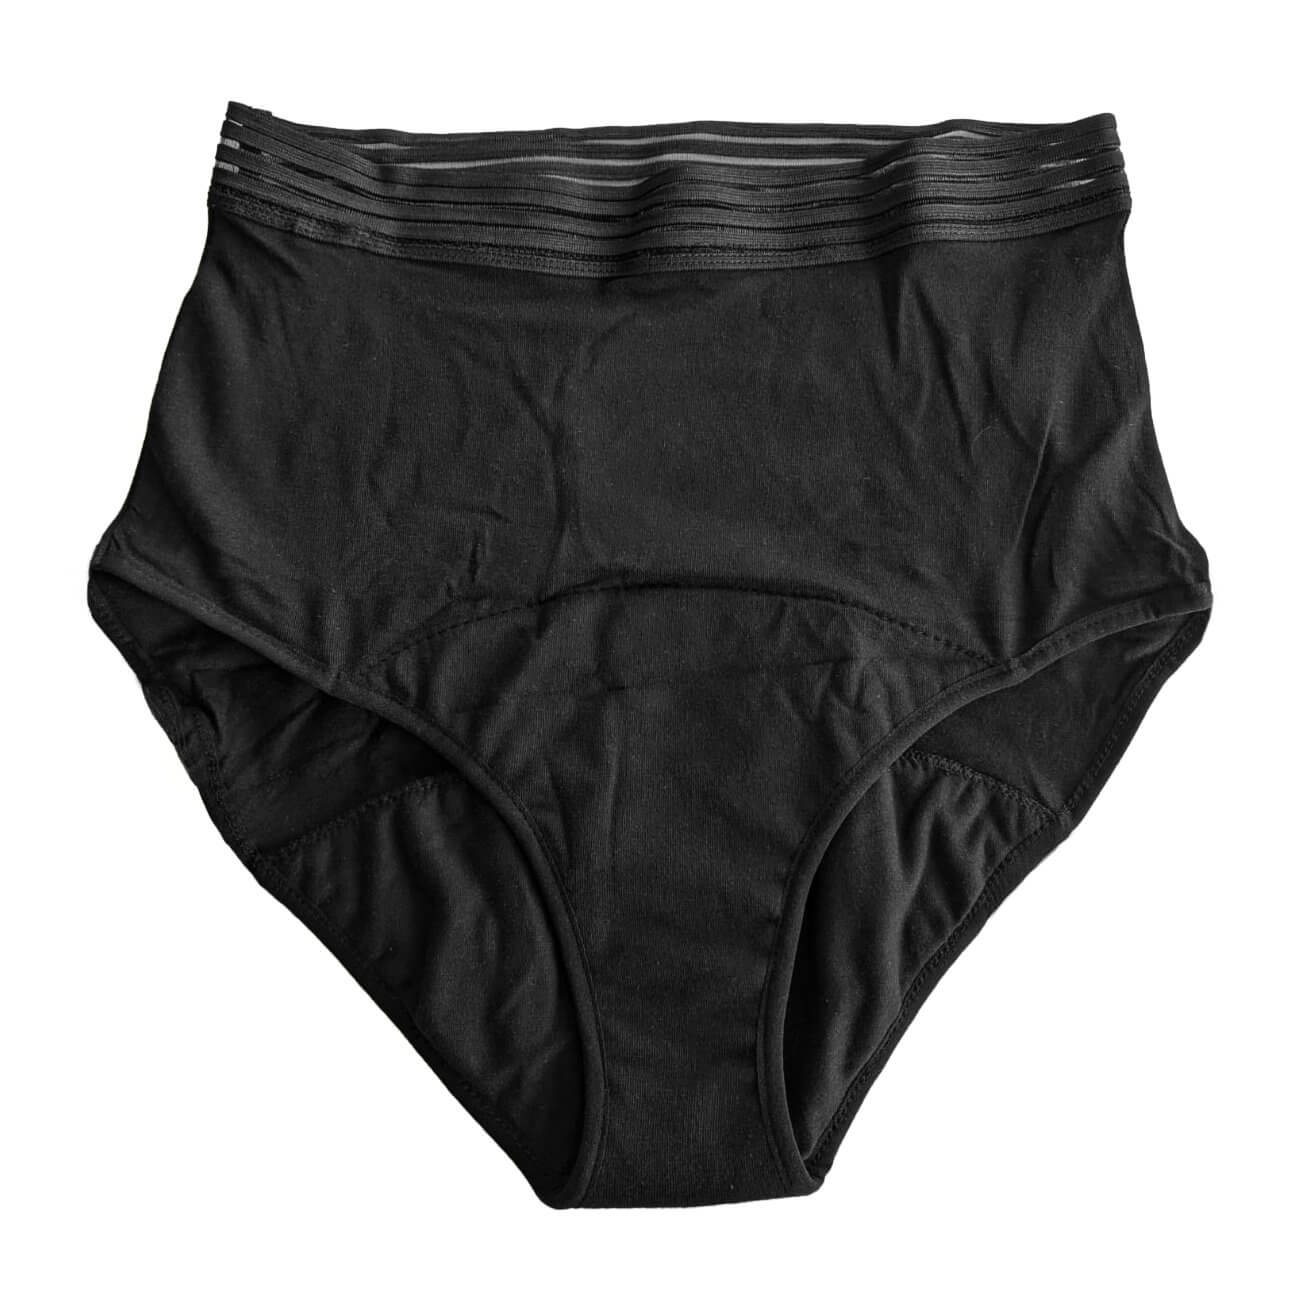 Black Period Underwear